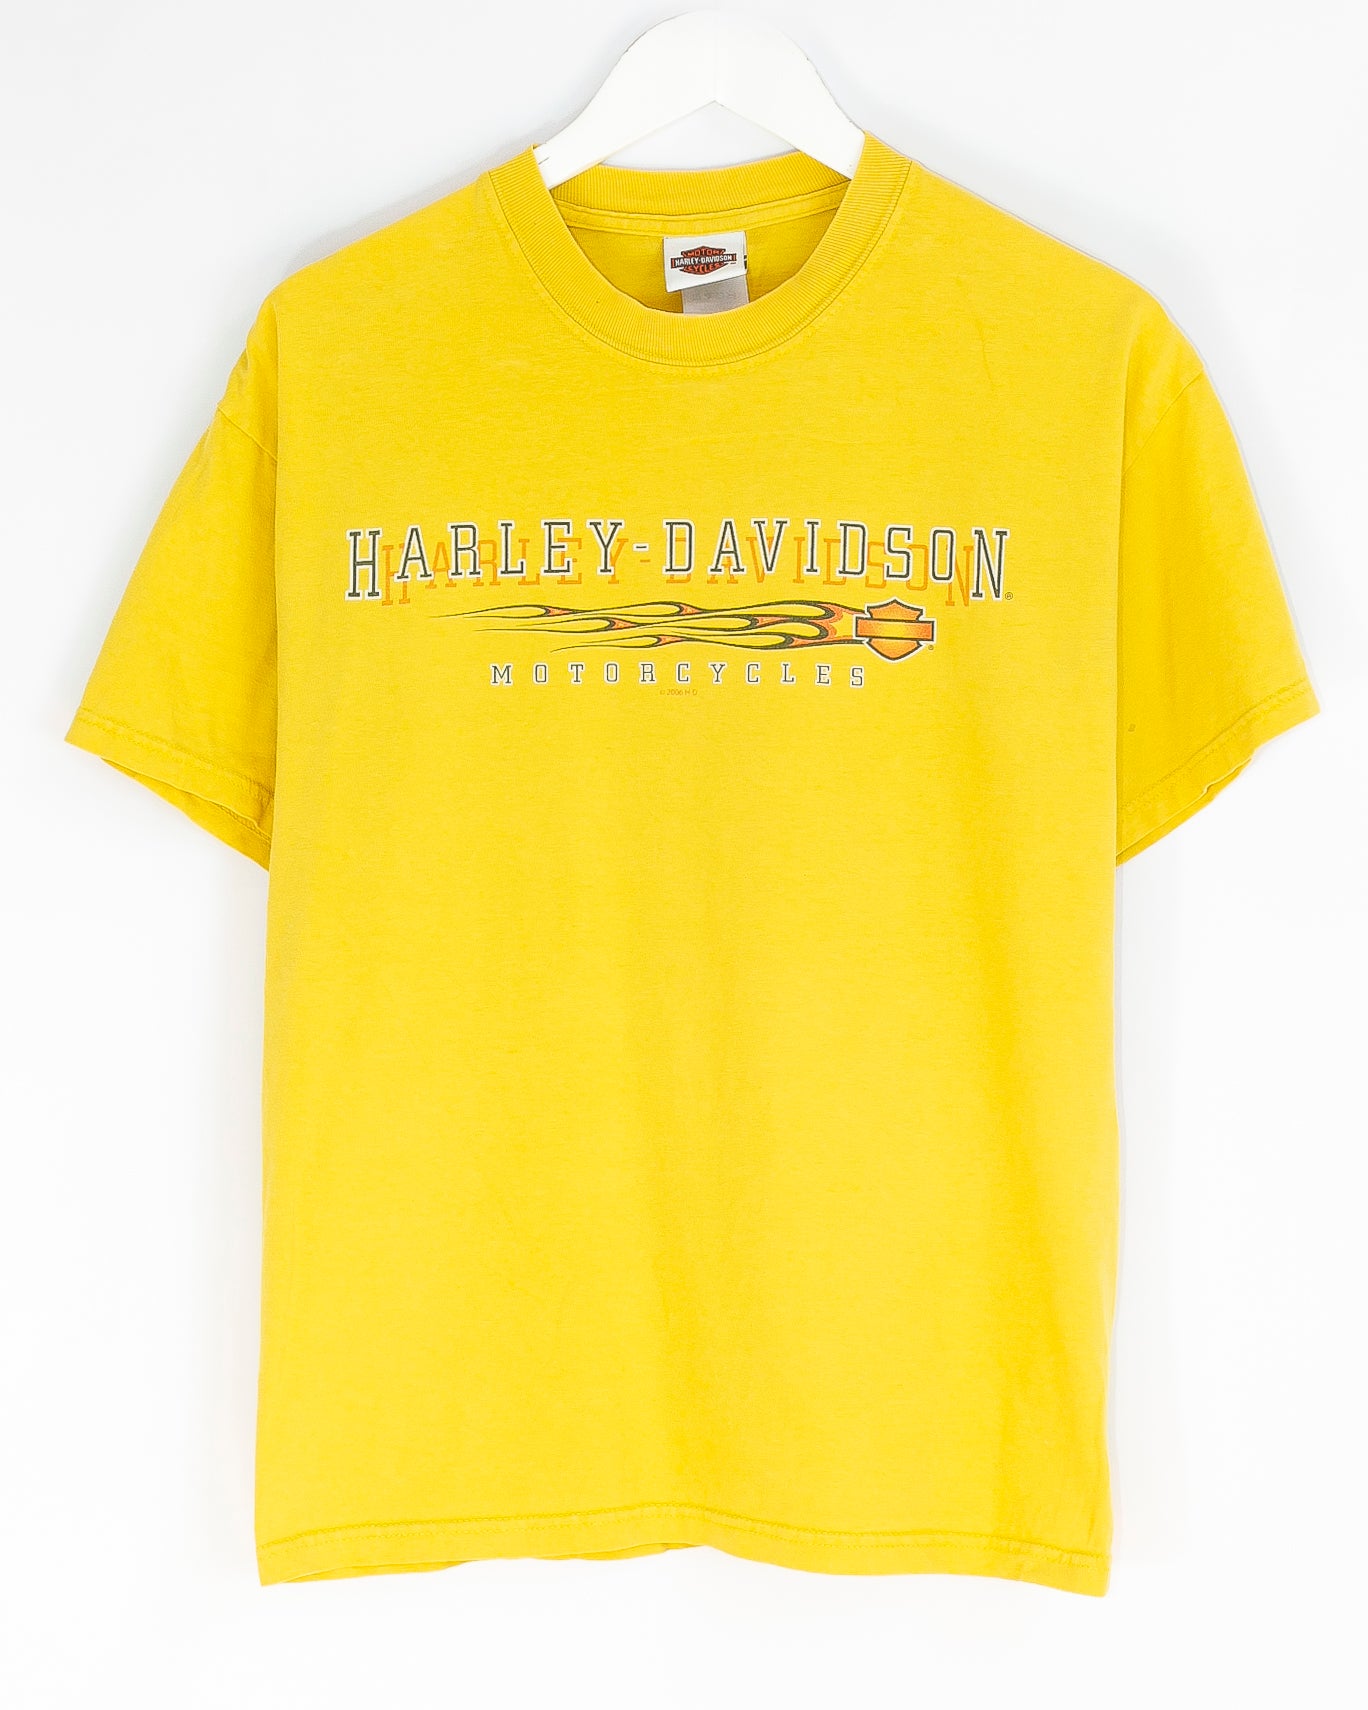 Vintage Harley Davidson T-shirt  (L)